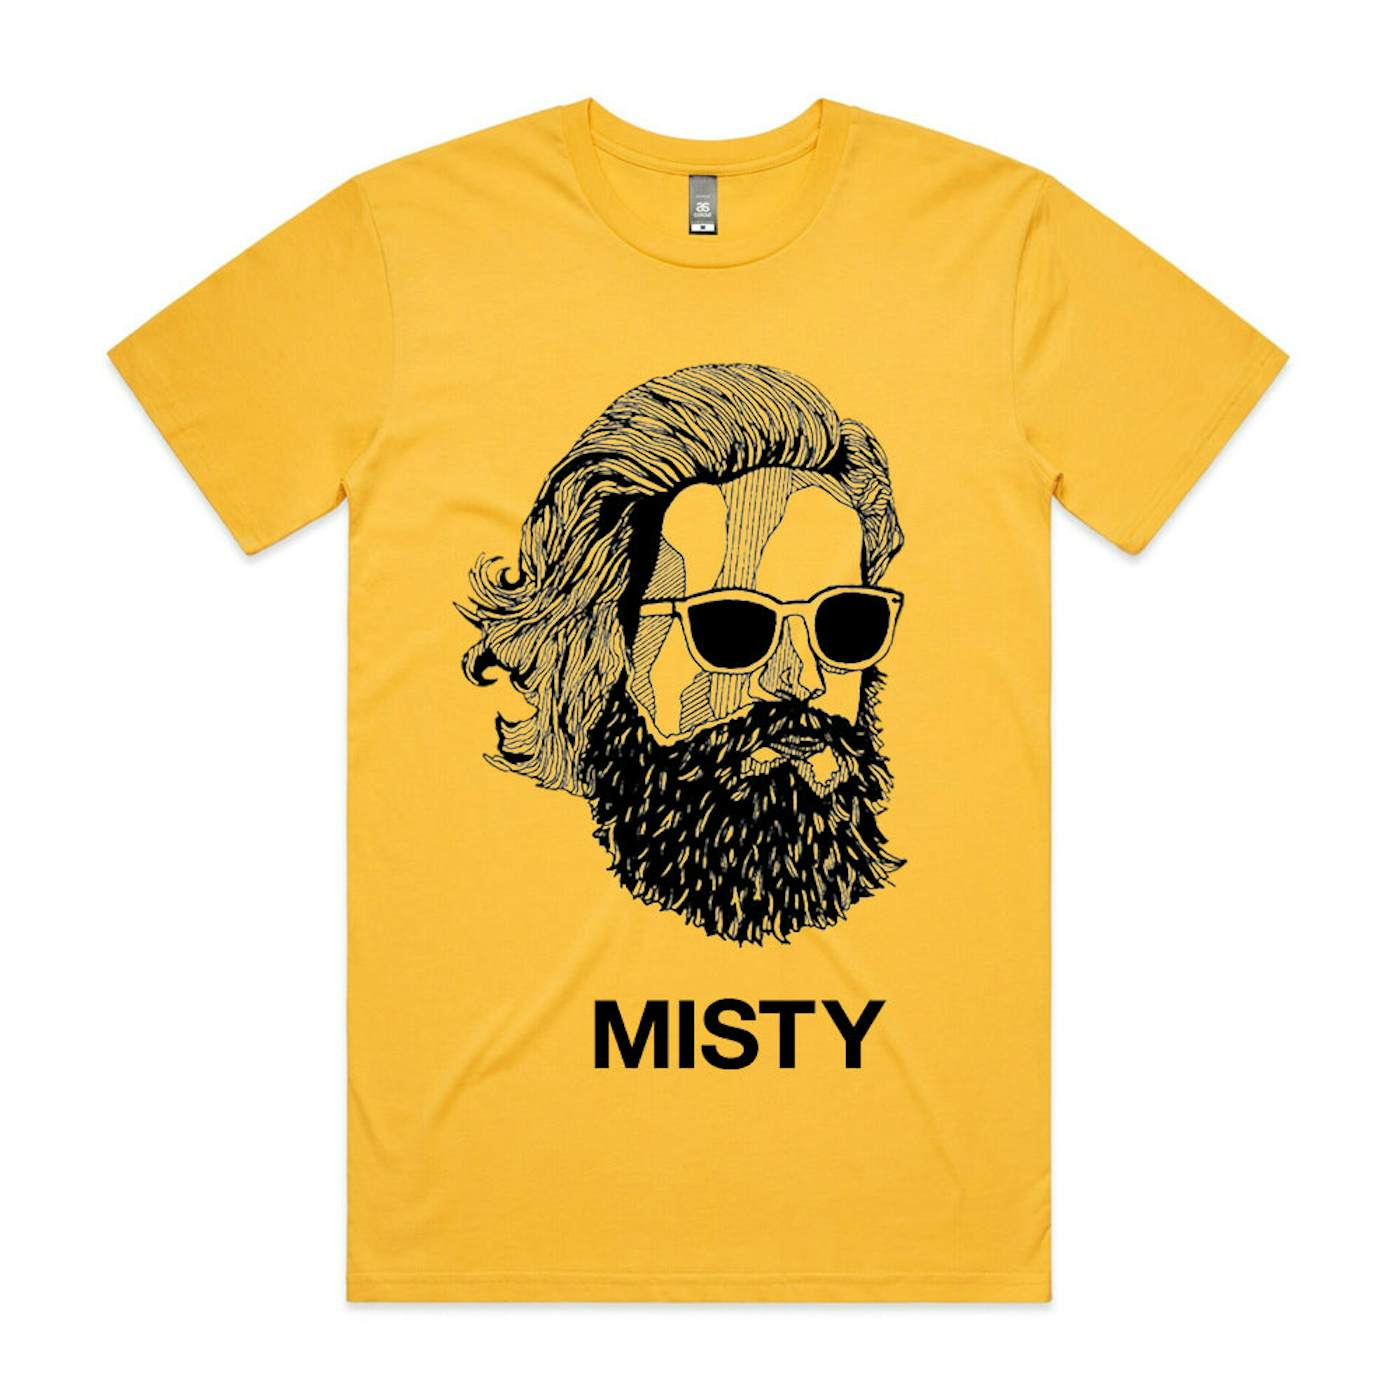 Father John Misty Misty Face T-Shirt